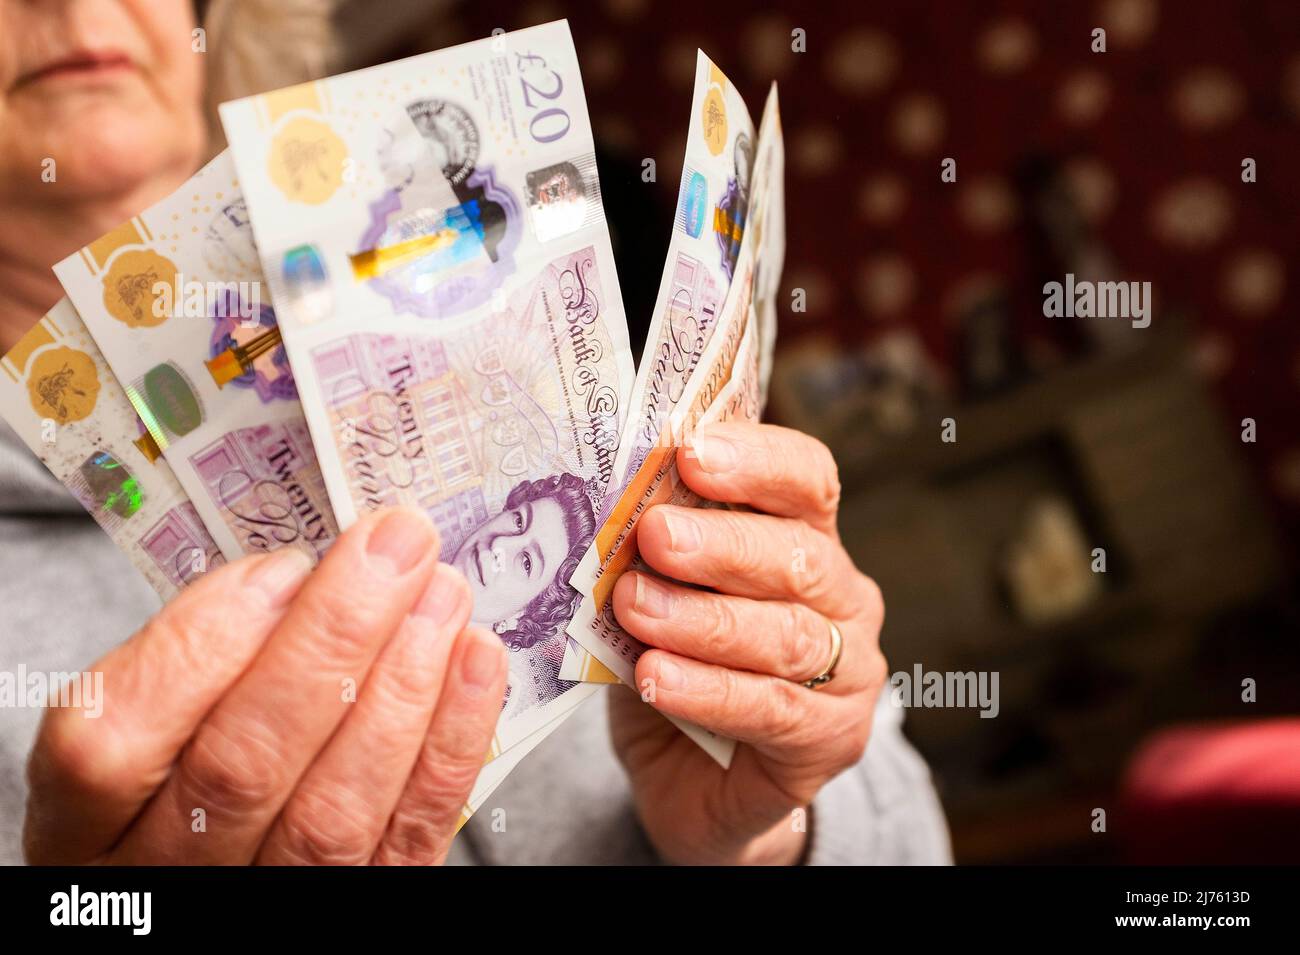 Mani in possesso di banconote £20 e £10 per illustrare i contanti in mano e pagare in contanti durante la crisi economica nel Regno Unito Foto Stock